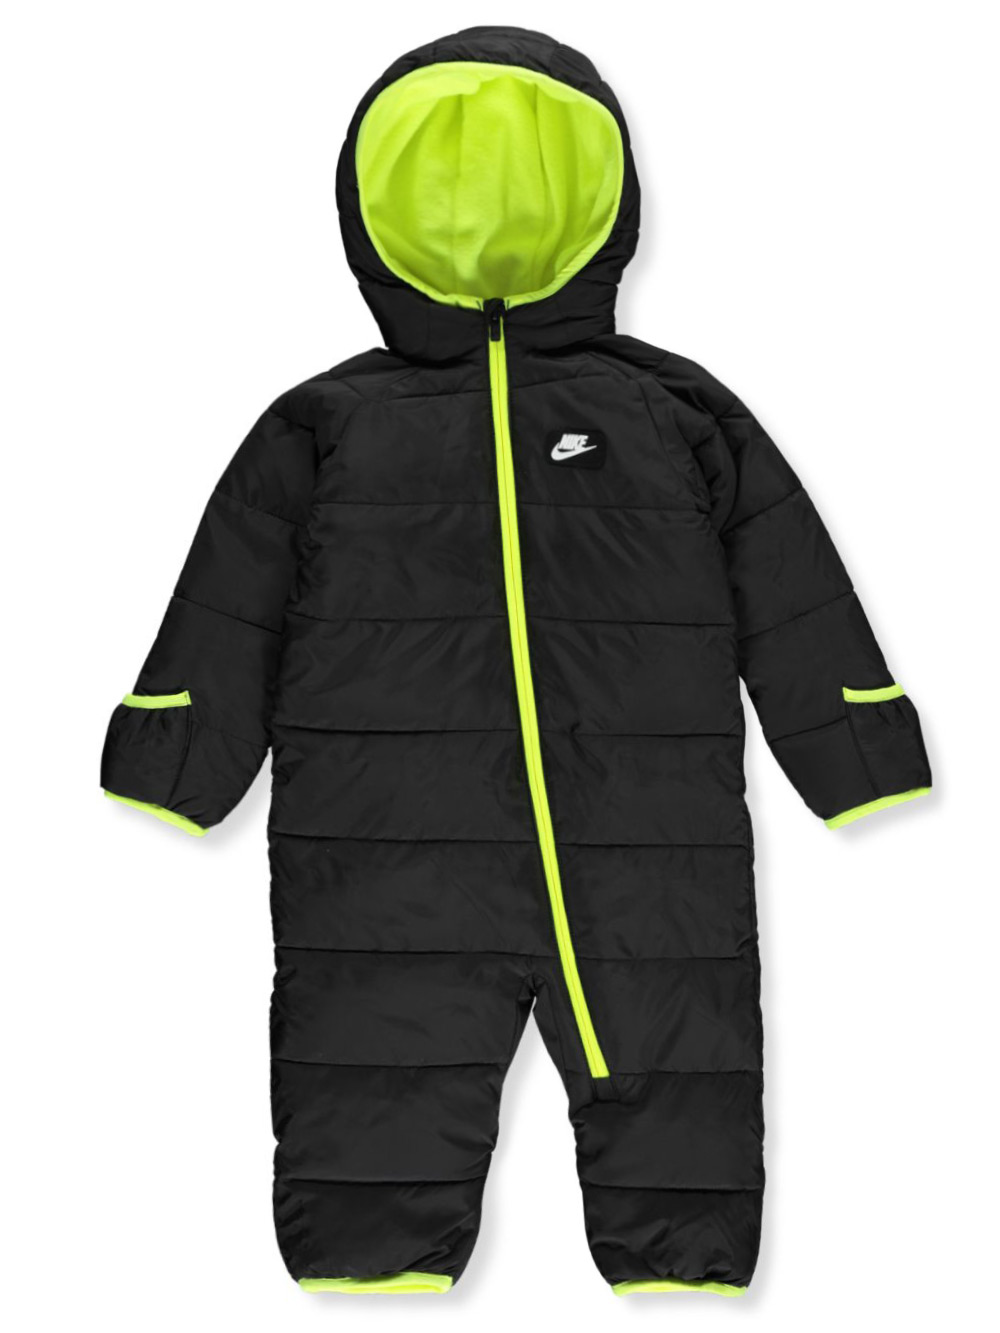 Nike Baby Boys' Fleece Lined Snowsuit